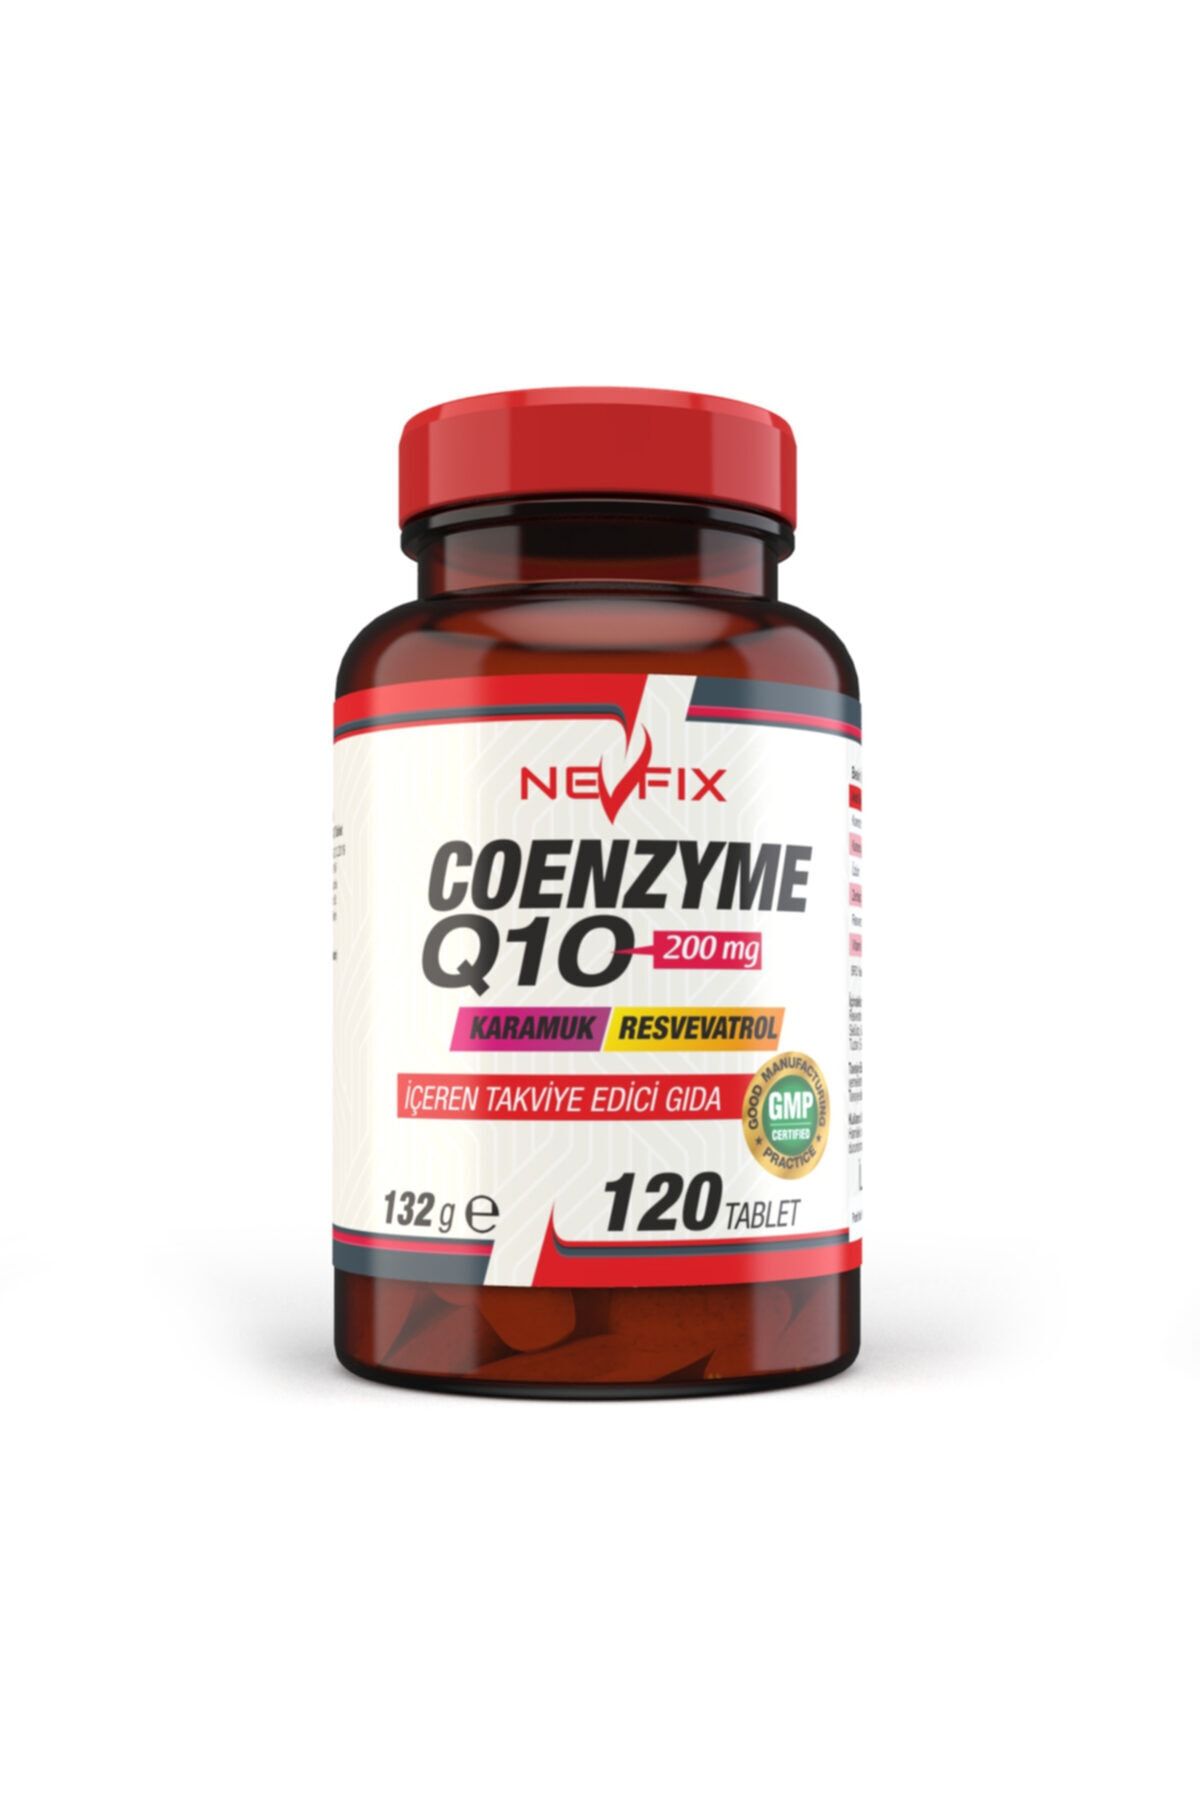 Nevfix Coenzyme Q10 200 Mg 120 Tablets